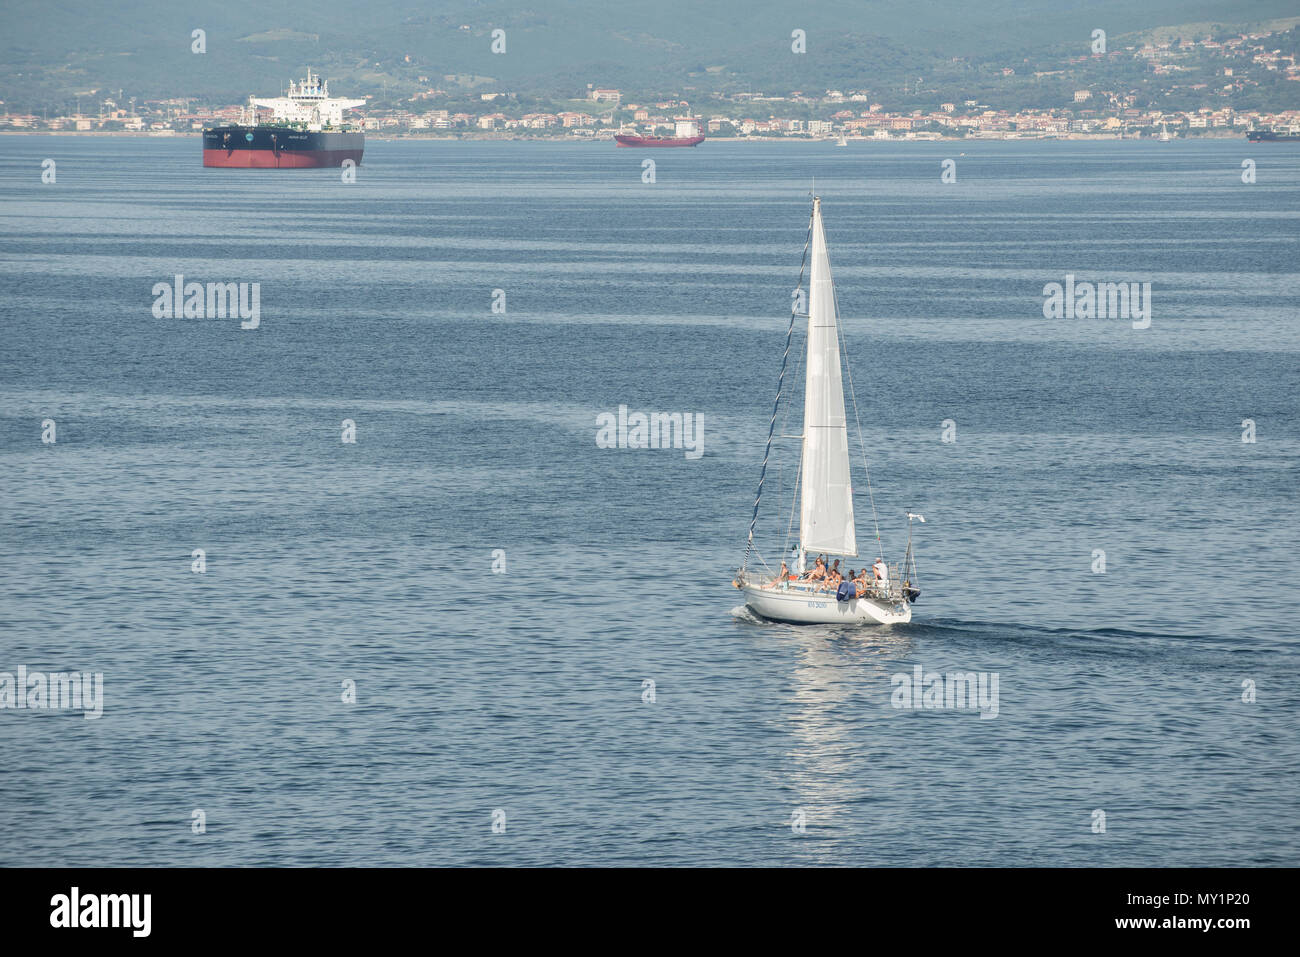 A sailing boat close to the tuscanian coast near Livorno, Italy Stock Photo